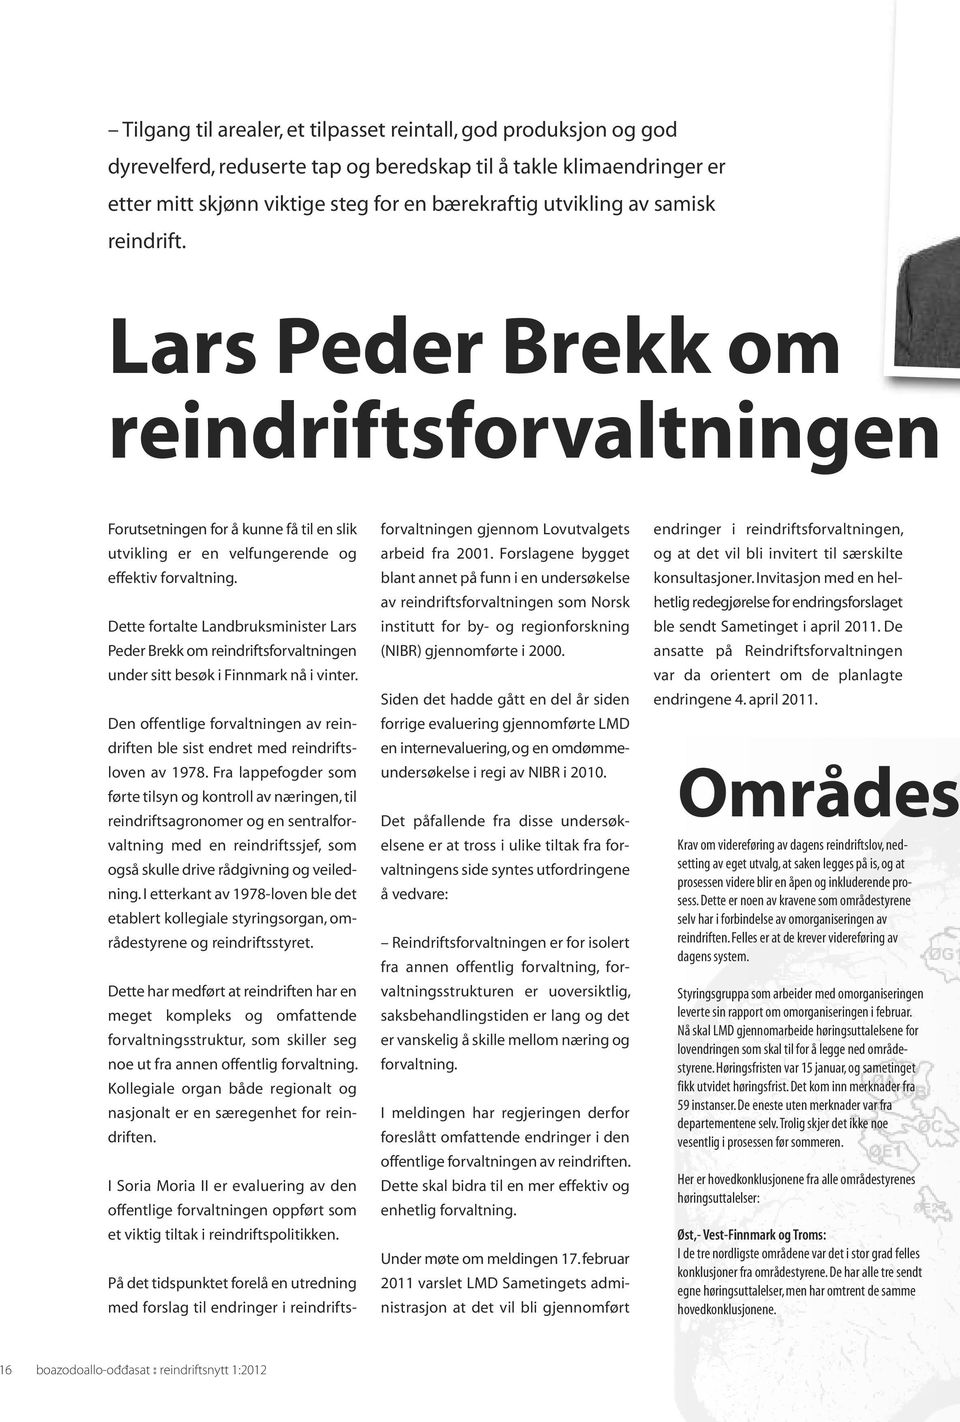 Dette fortalte Landbruksminister Lars Peder Brekk om reindriftsforvaltningen under sitt besøk i Finnmark nå i vinter.